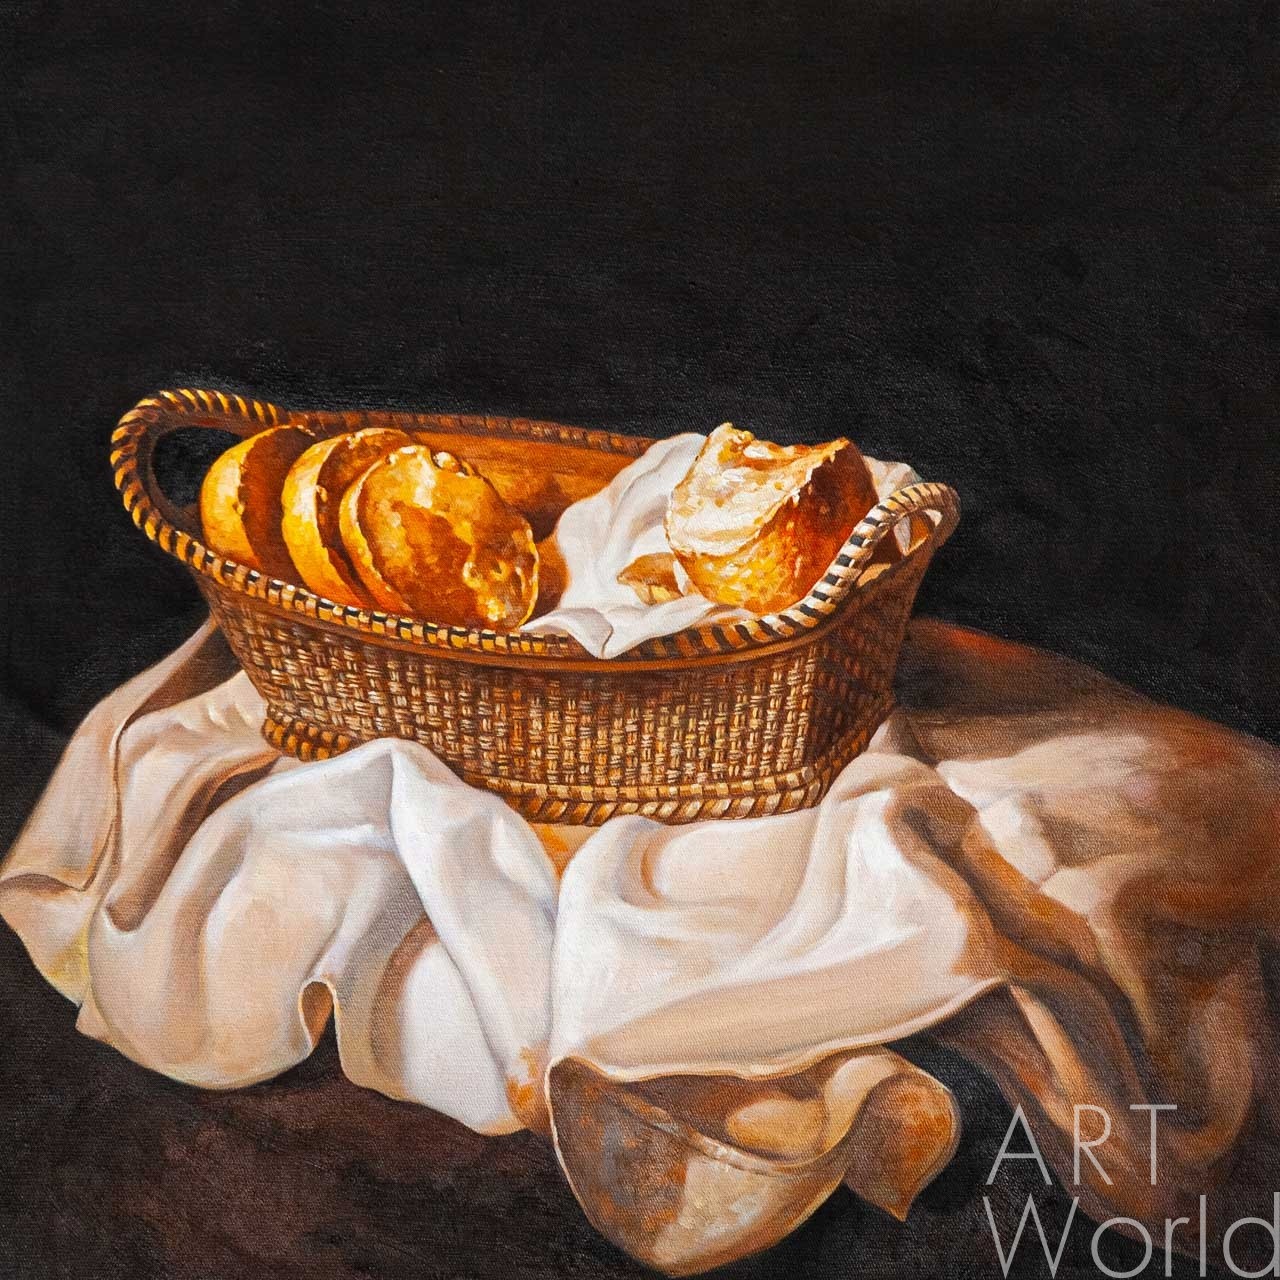 картина масло холст Копия картины Сальвадора Дали "Корзина с хлебом", 1926, худ. С.Камский, Дали Сальвадор (Salvador Dalí) Артворлд.ру